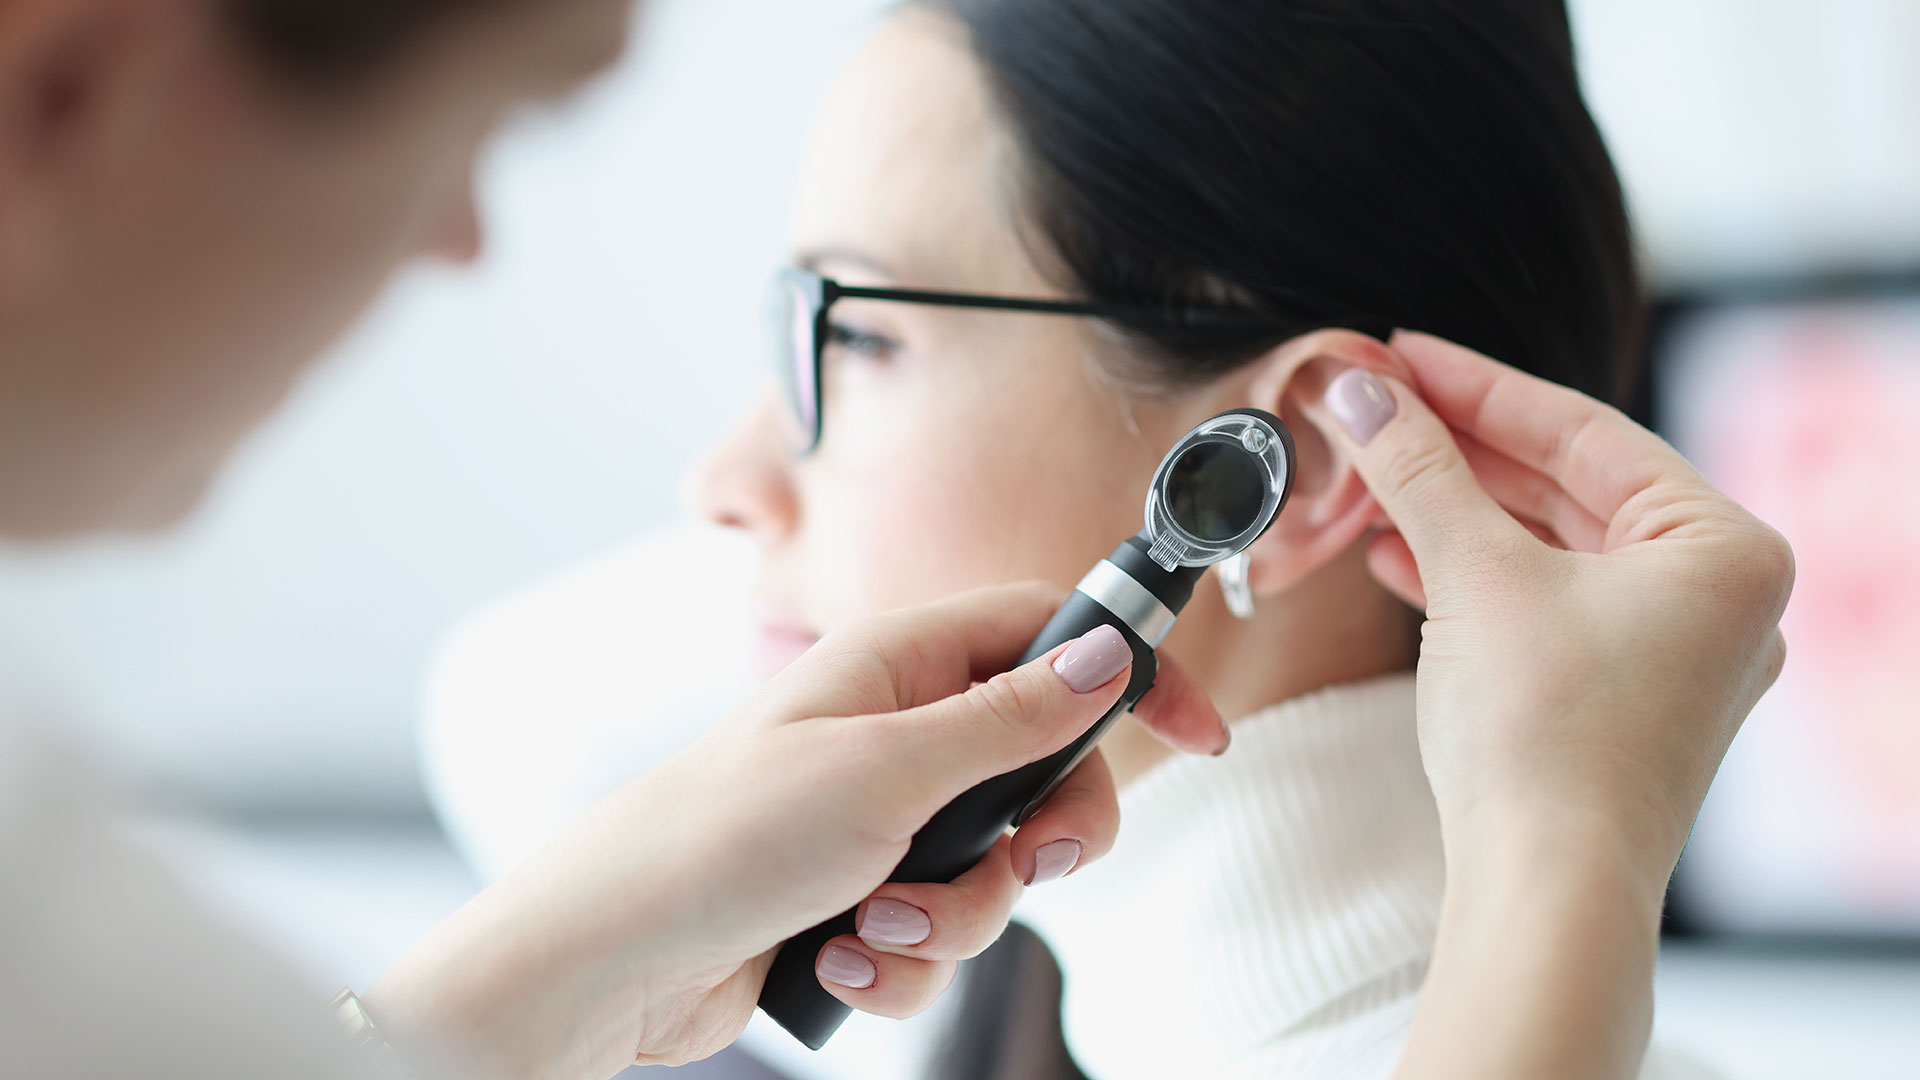 Médica otorrinolaringologista examina ouvido de paciente com instrumento